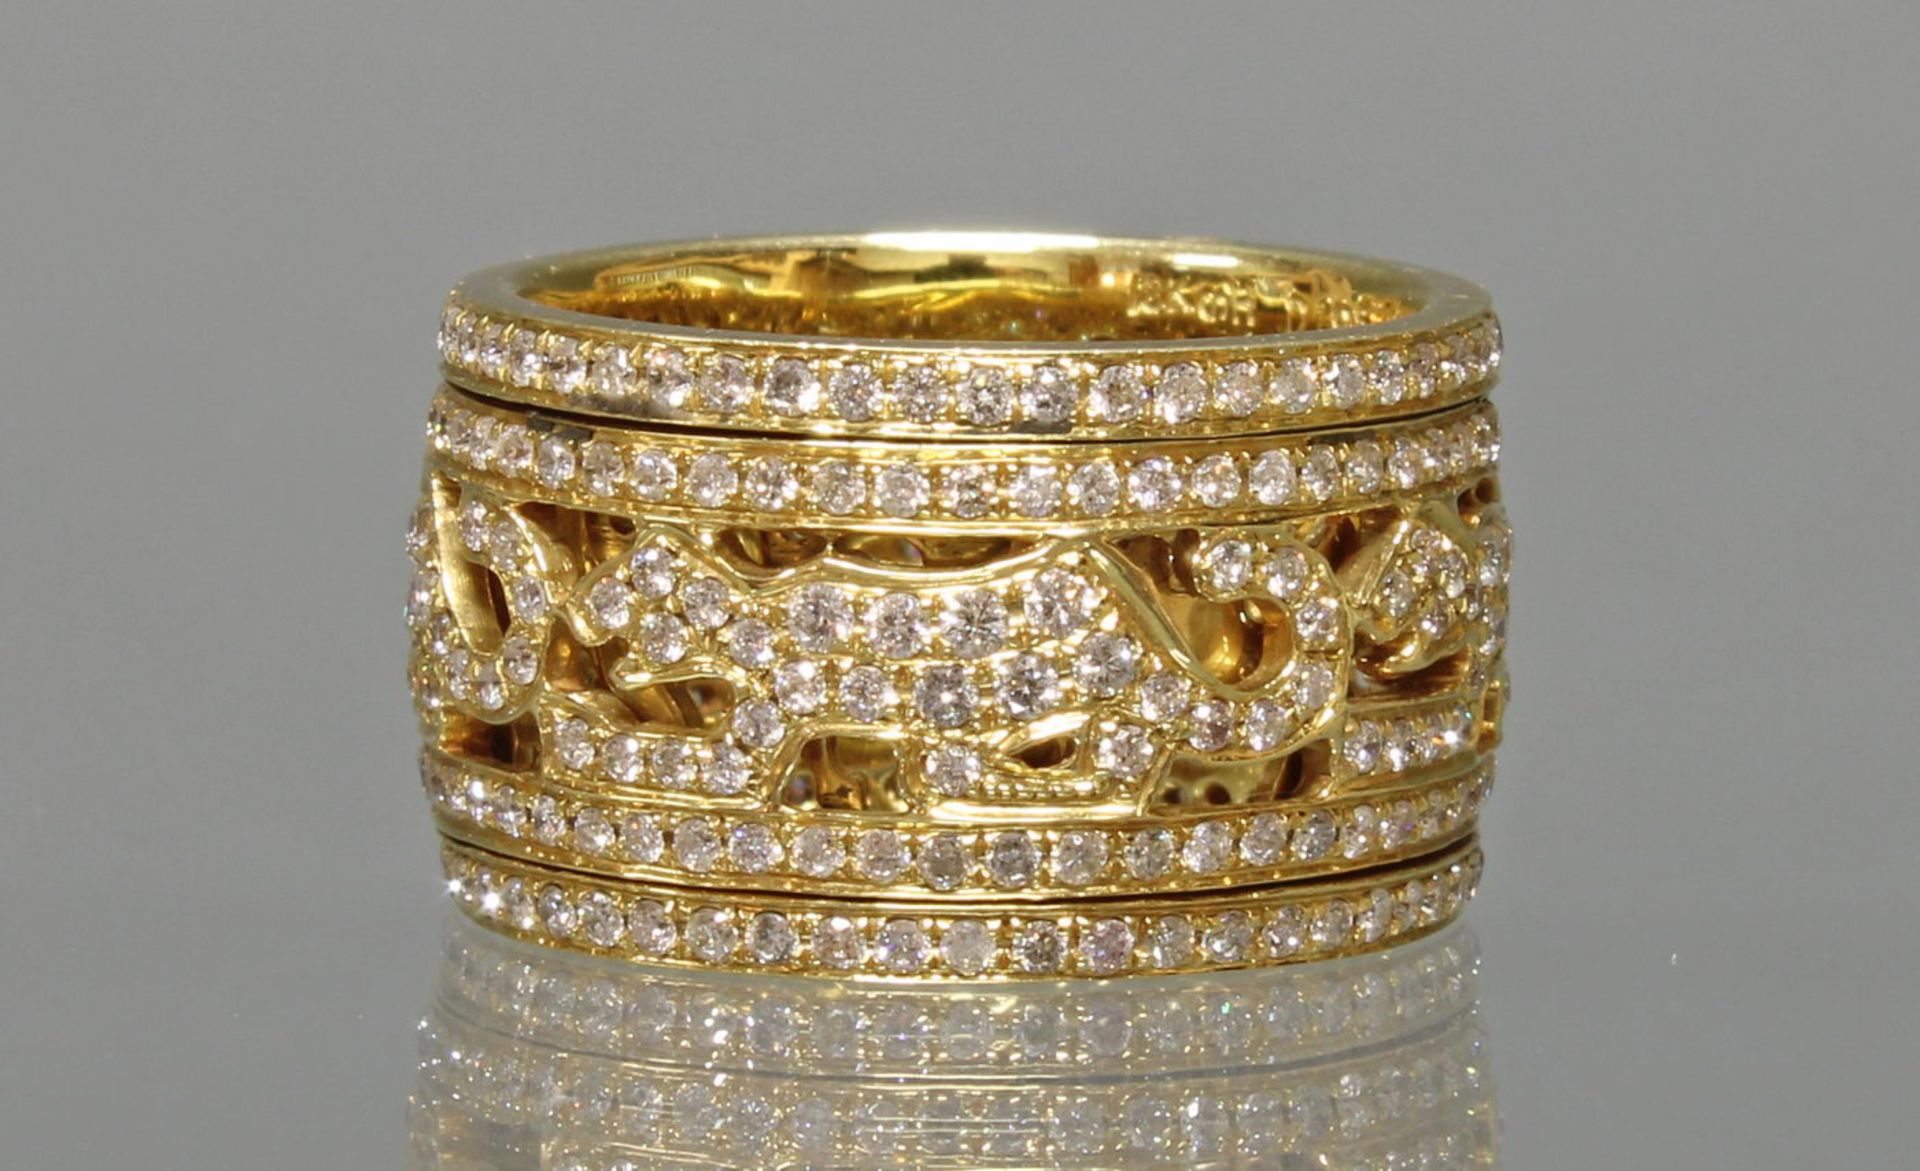 Ring, 'Panther', drehbares Mittelteil, GG 750, rundherum ausgefasst mit Brillanten zus. ca. 1.96 ct - Bild 2 aus 2